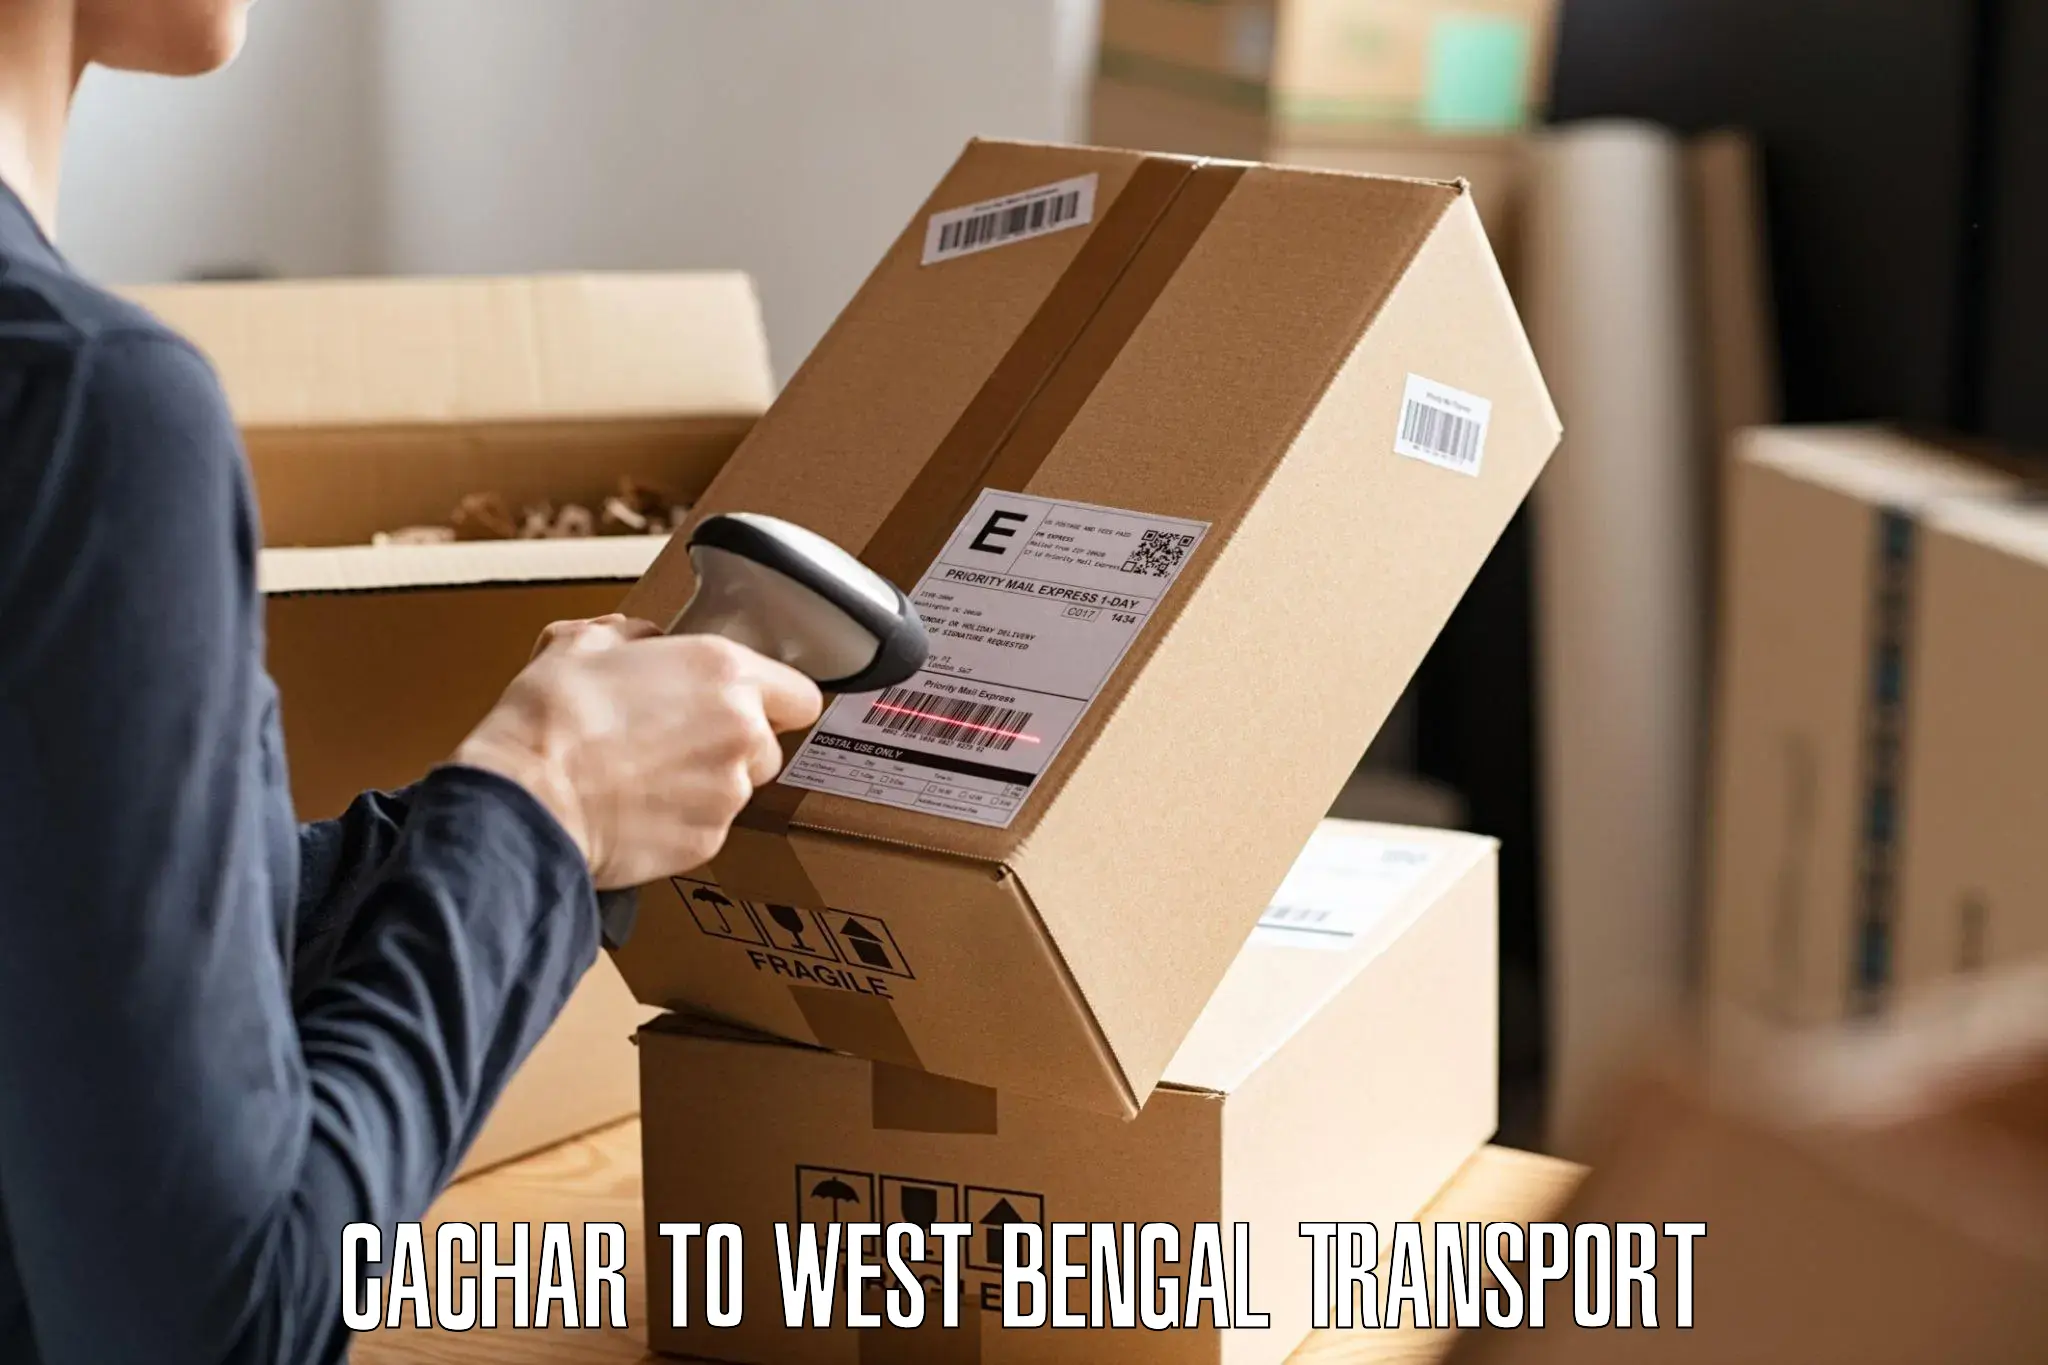 Two wheeler parcel service Cachar to Swarupnagar